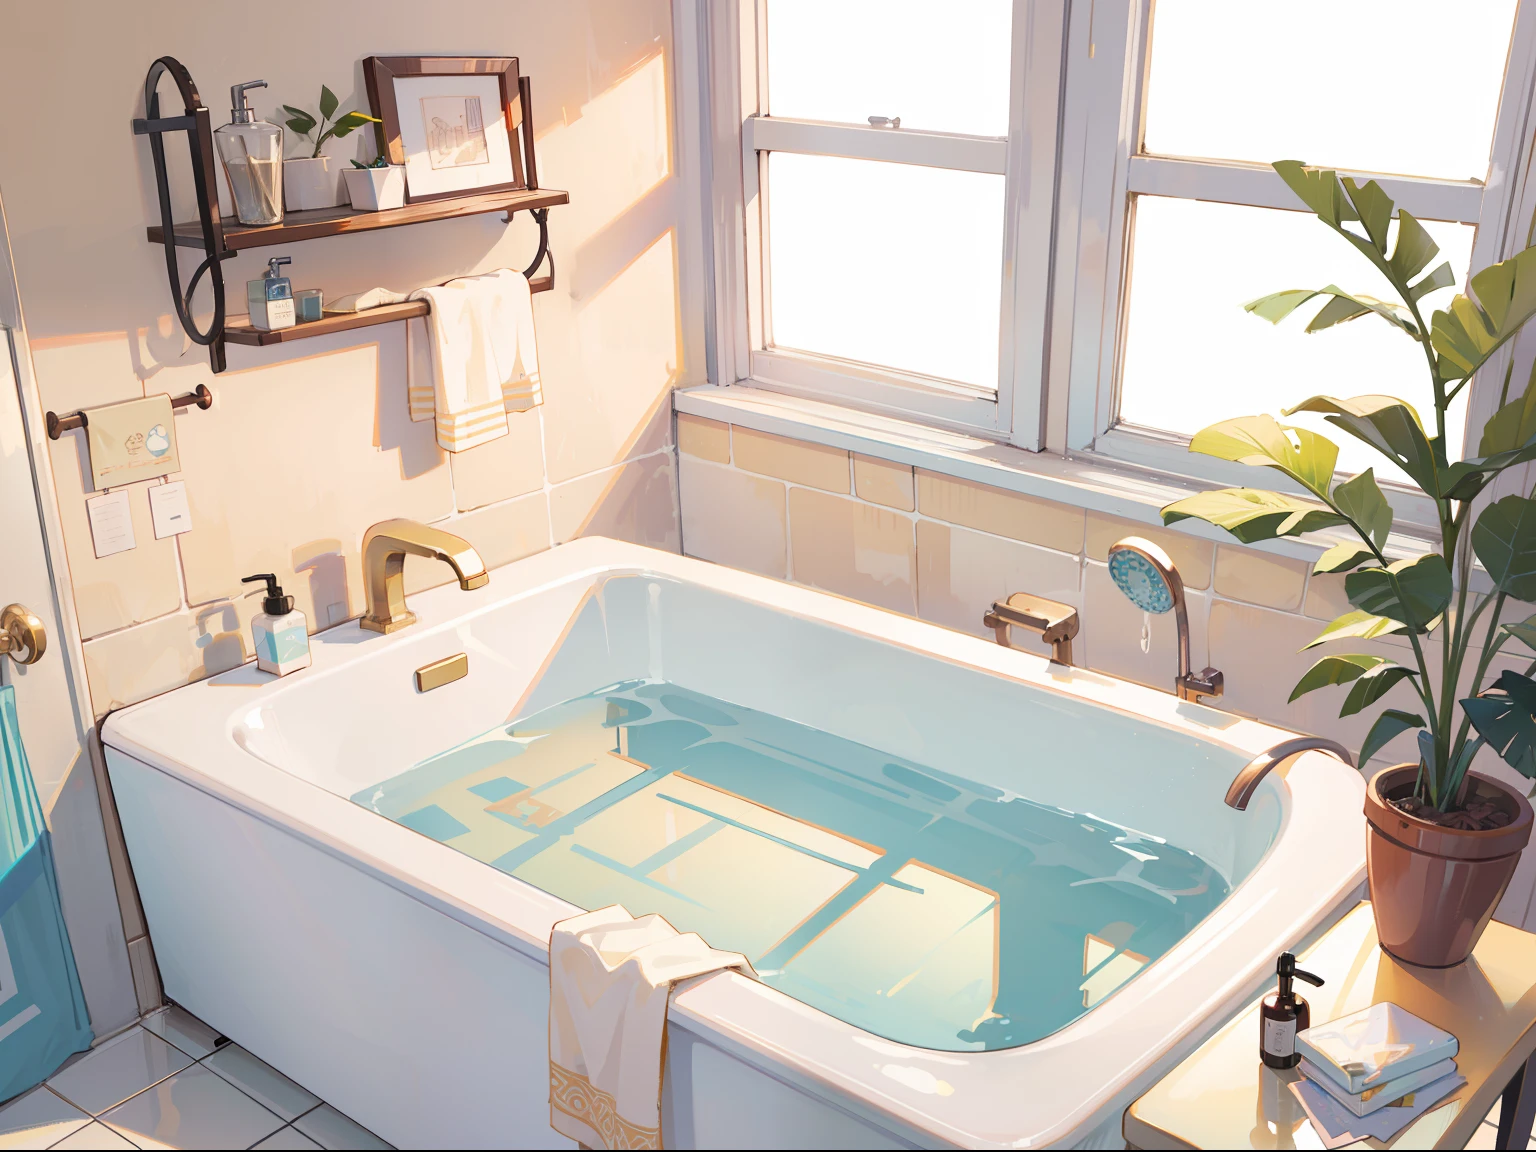 (chef-d&#39;œuvre), Meilleure qualité, ultra haute résolution, Structure détaillée, architecture détaillée, (couleur pastel chaude), salle de bain mini-studio, commodités sur le comptoir, couler, (1 baignoire)